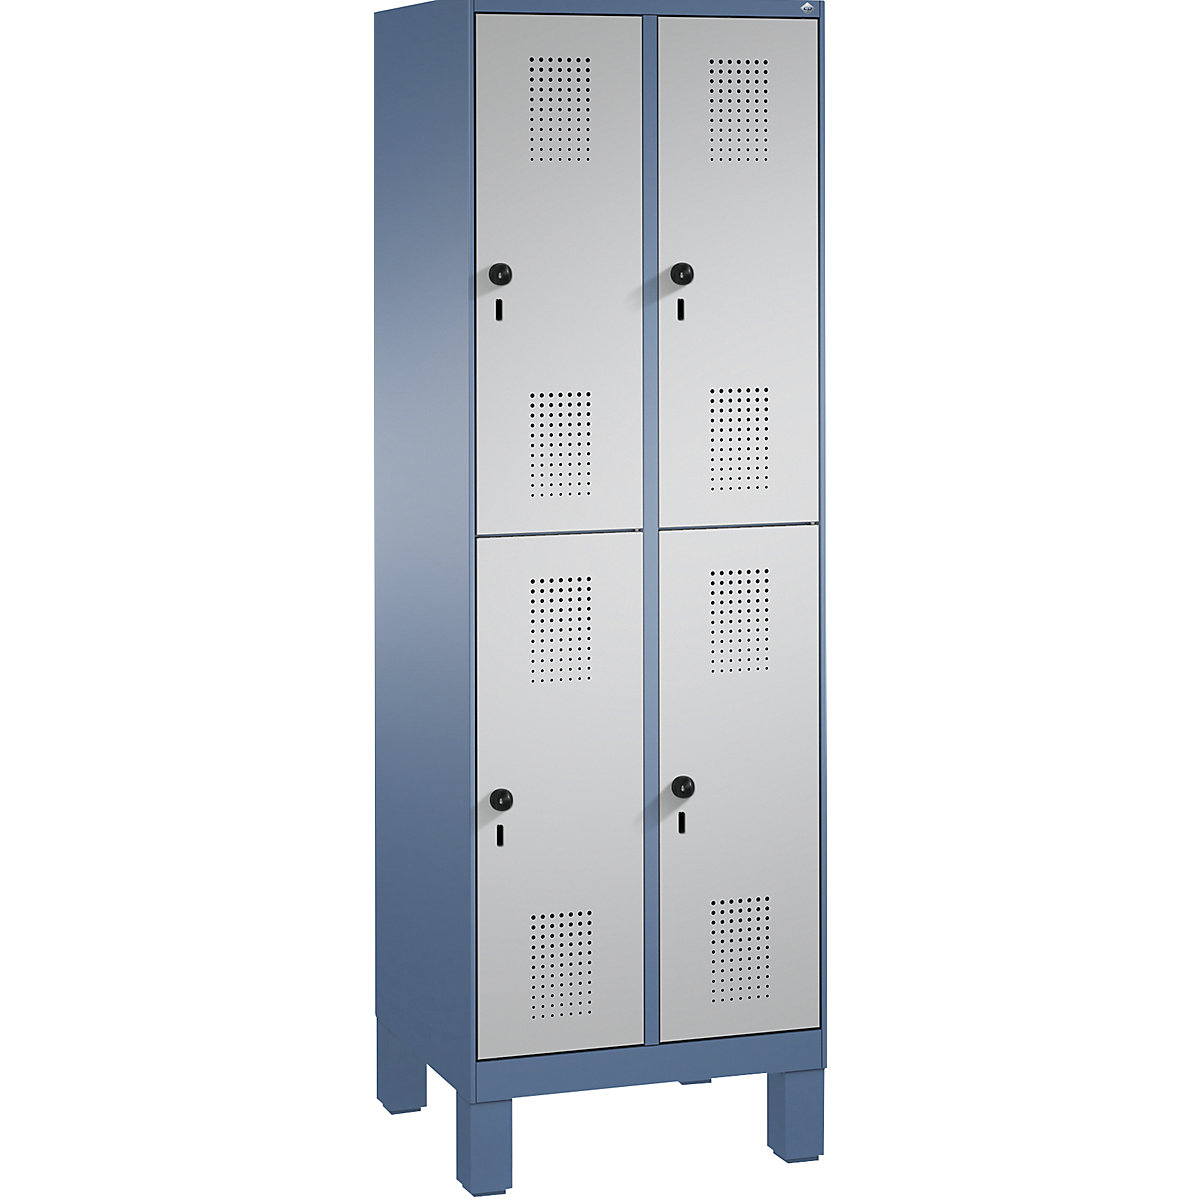 Penderie sur pieds EVOLO à deux étages – C+P, 2 compartiments, 2 casiers chacun, largeur compartiments 300 mm, bleu distant / aluminium-12